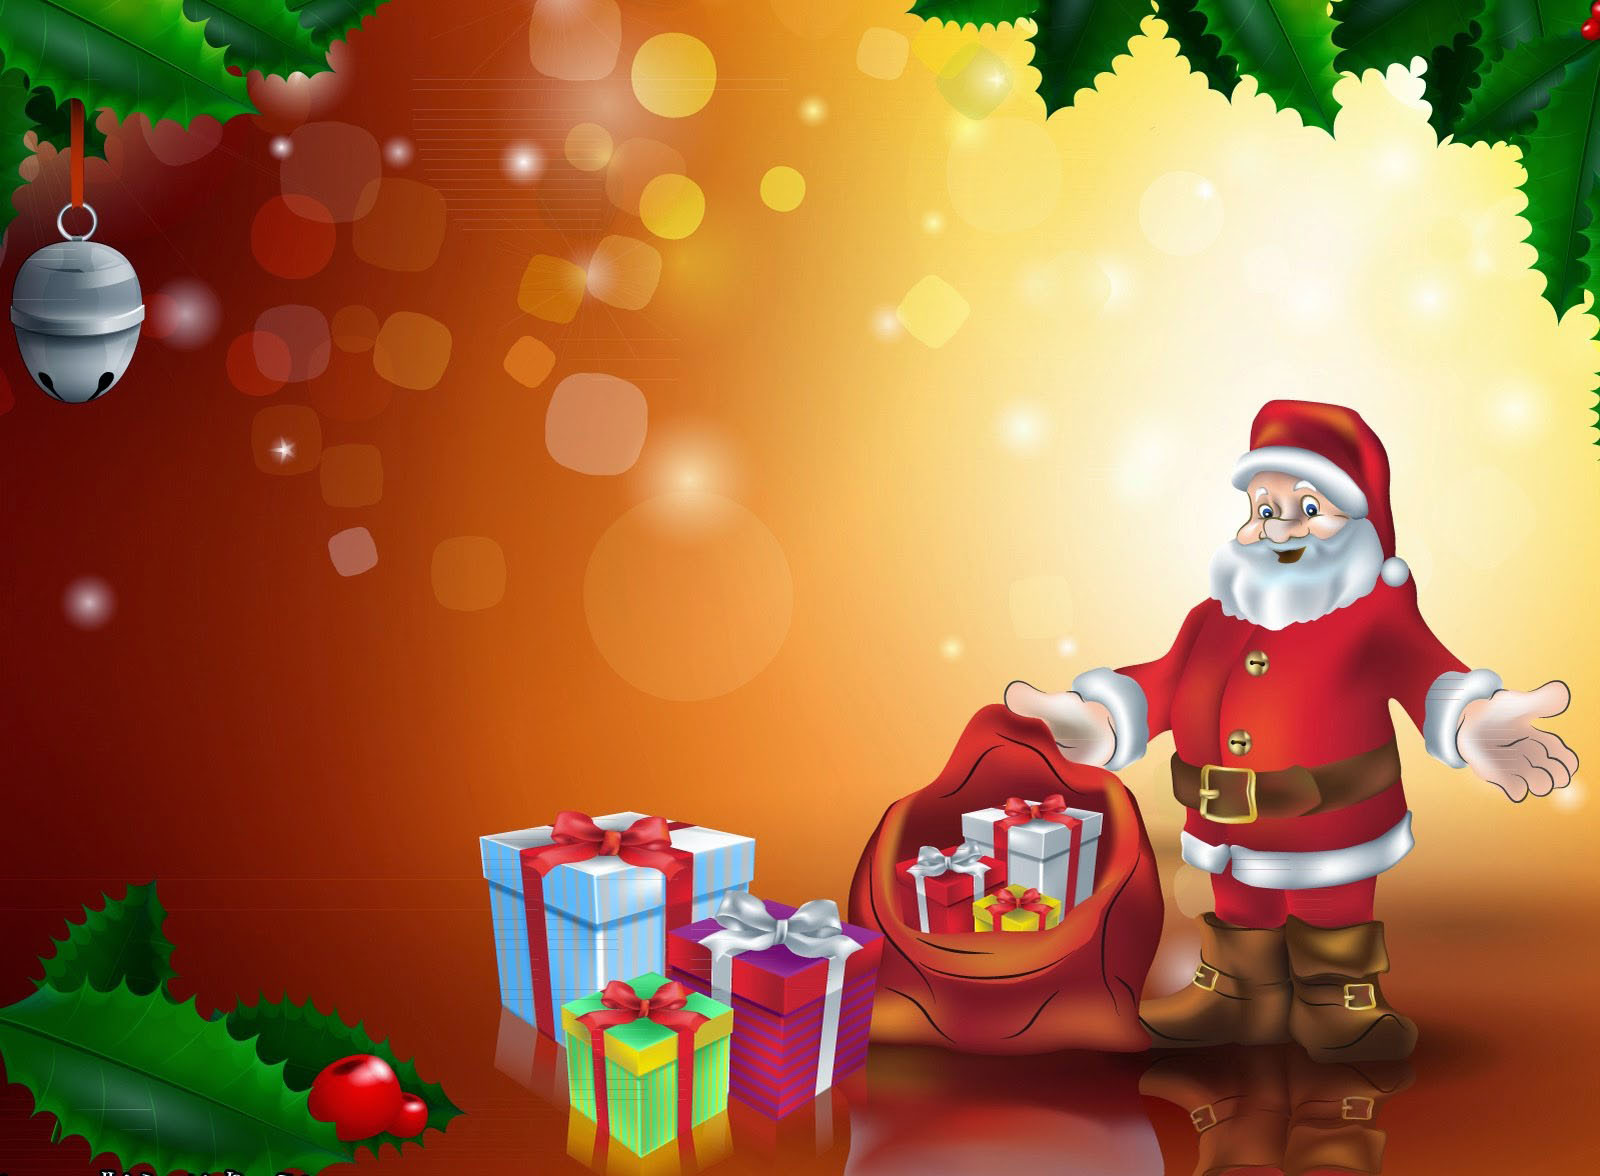 Santa Claus Live Wallpaper - Christmas Wallpaper With Santa - HD Wallpaper 